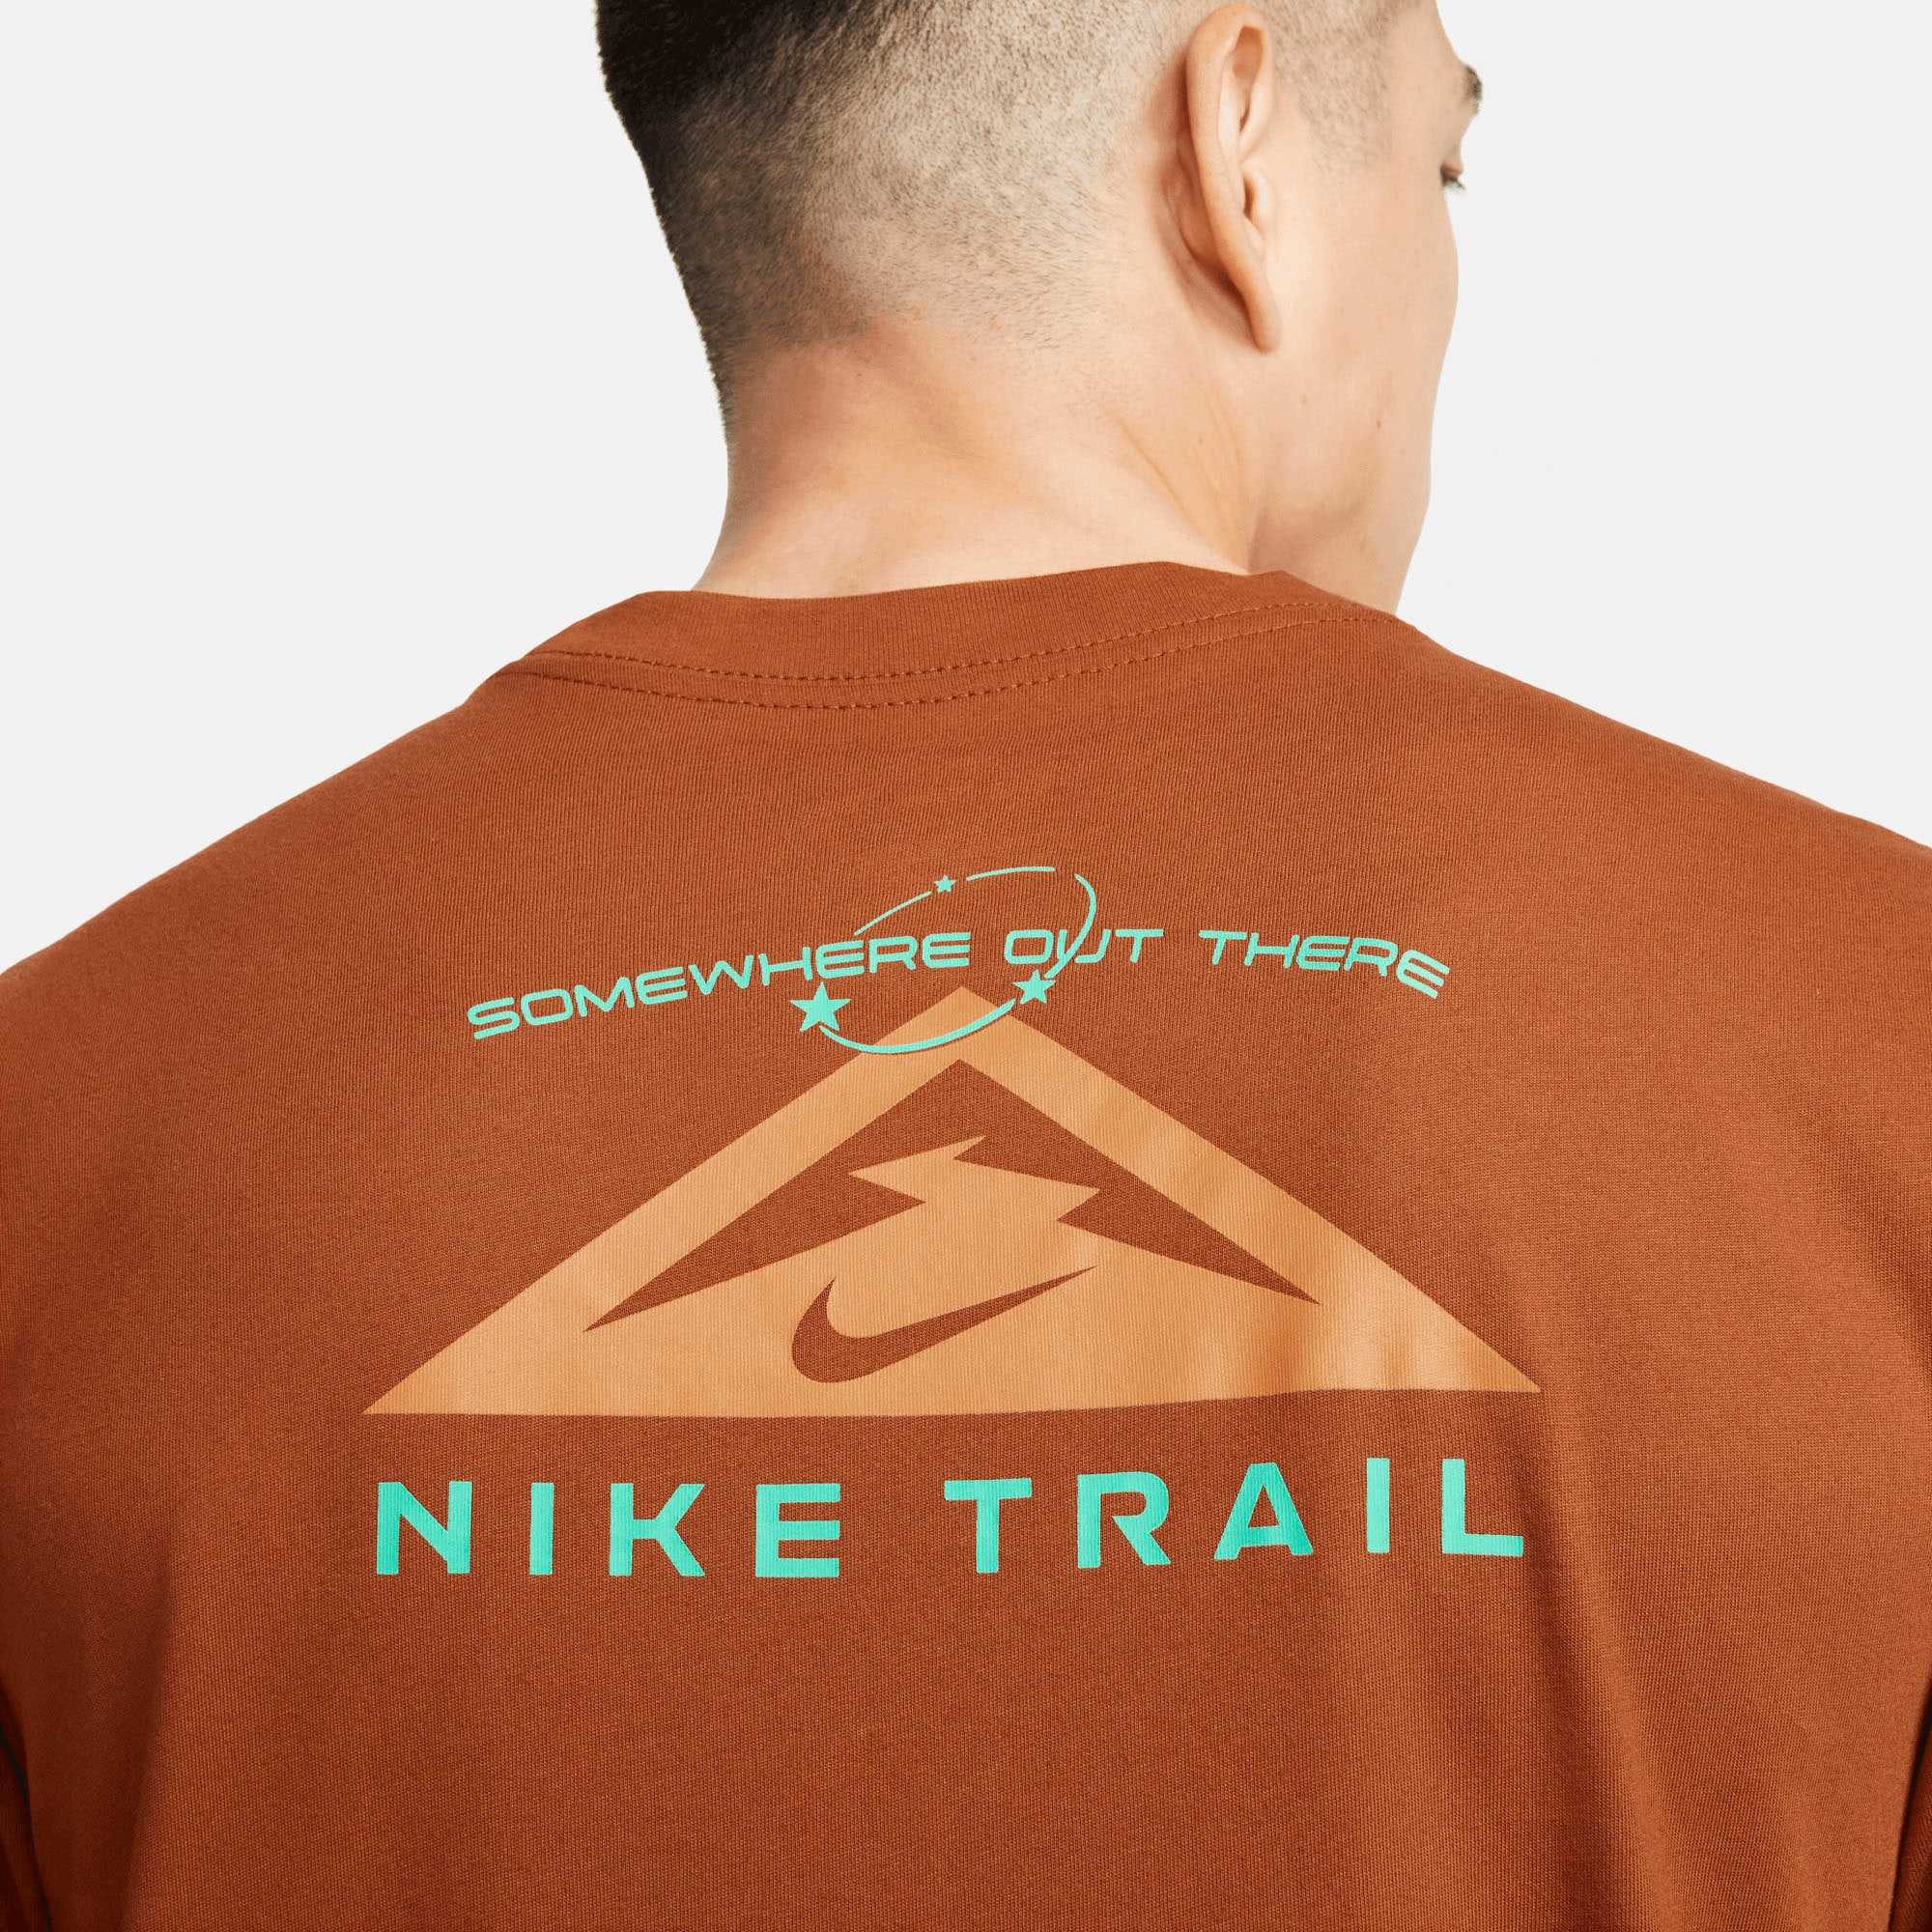 Nike Laufshirt »Trail Dri-FIT Men's Trail Running T-Shirt«